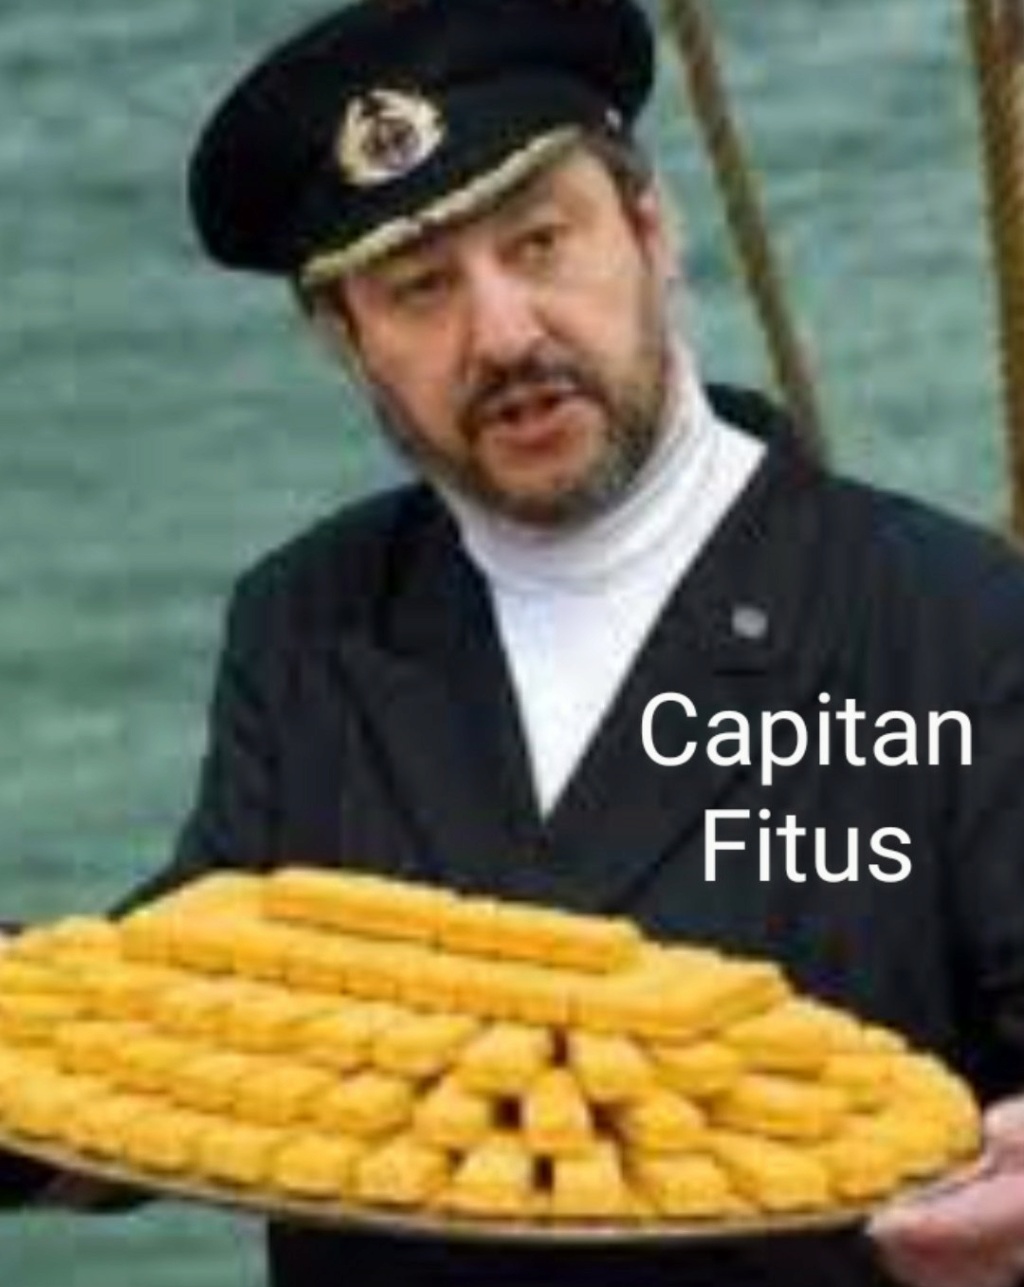 Capitan fitus Scree846